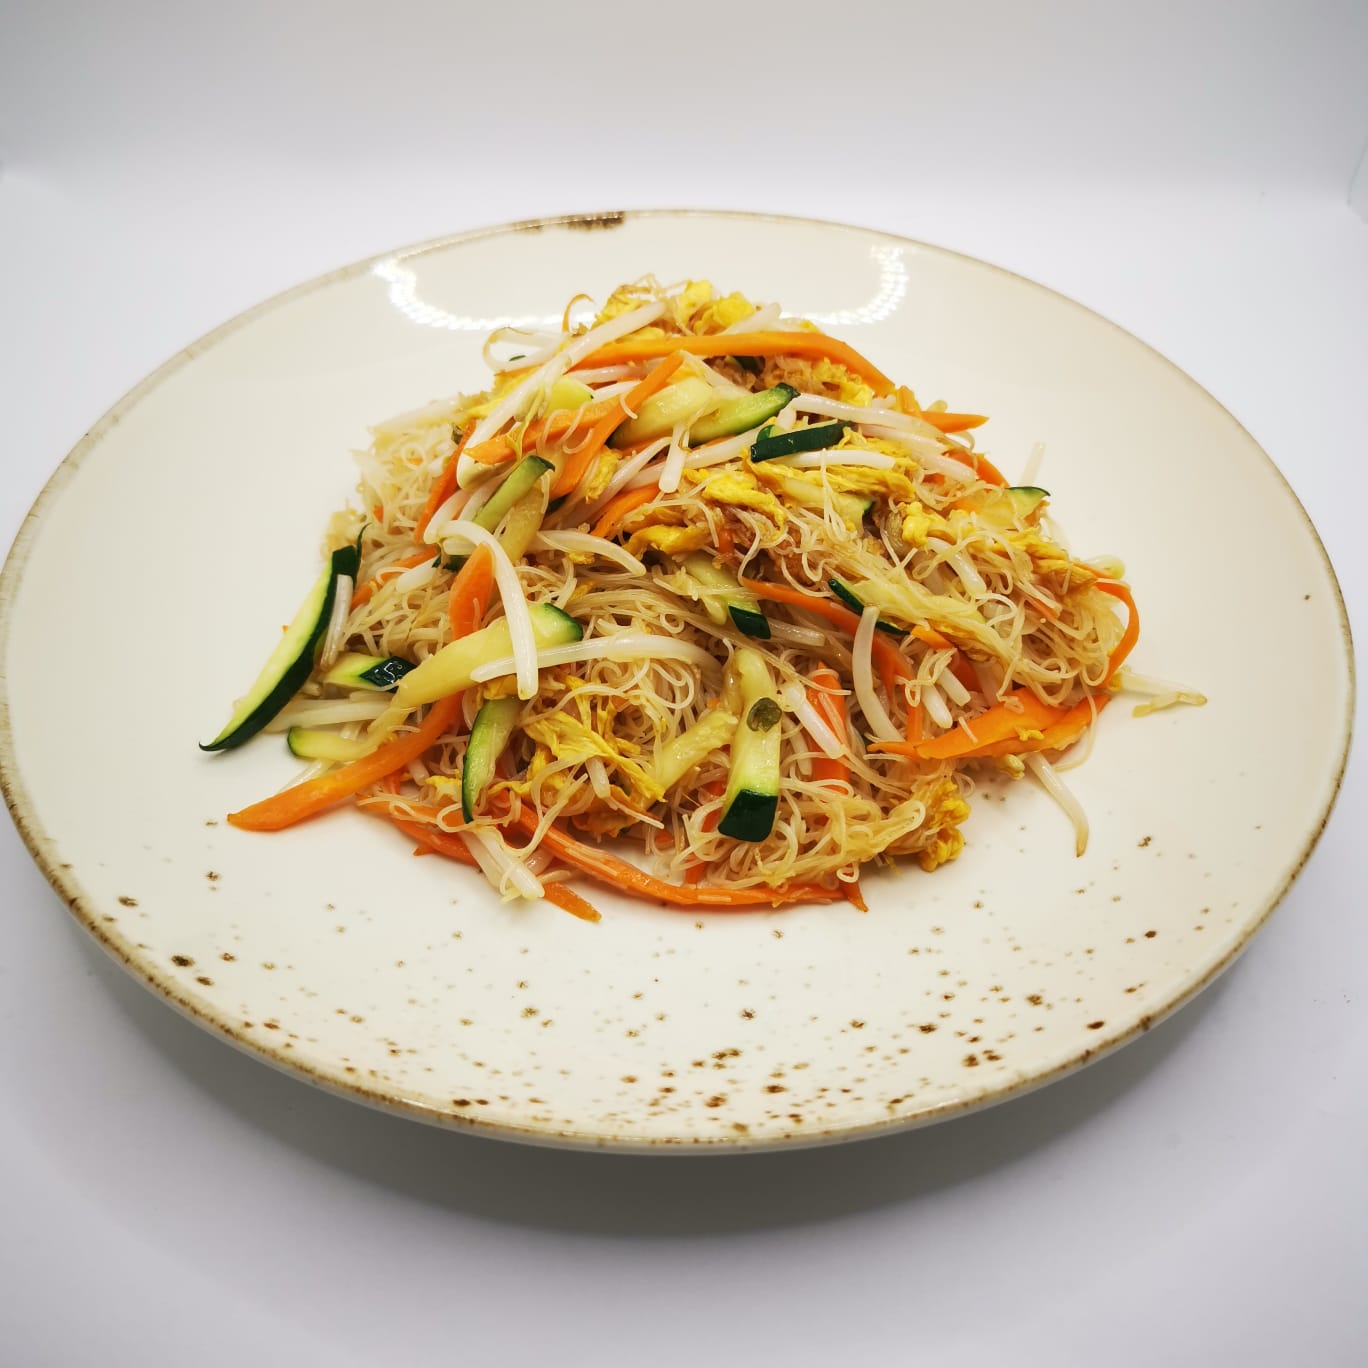 26) Spaghetti di riso con verdure – Fujiyama Hot